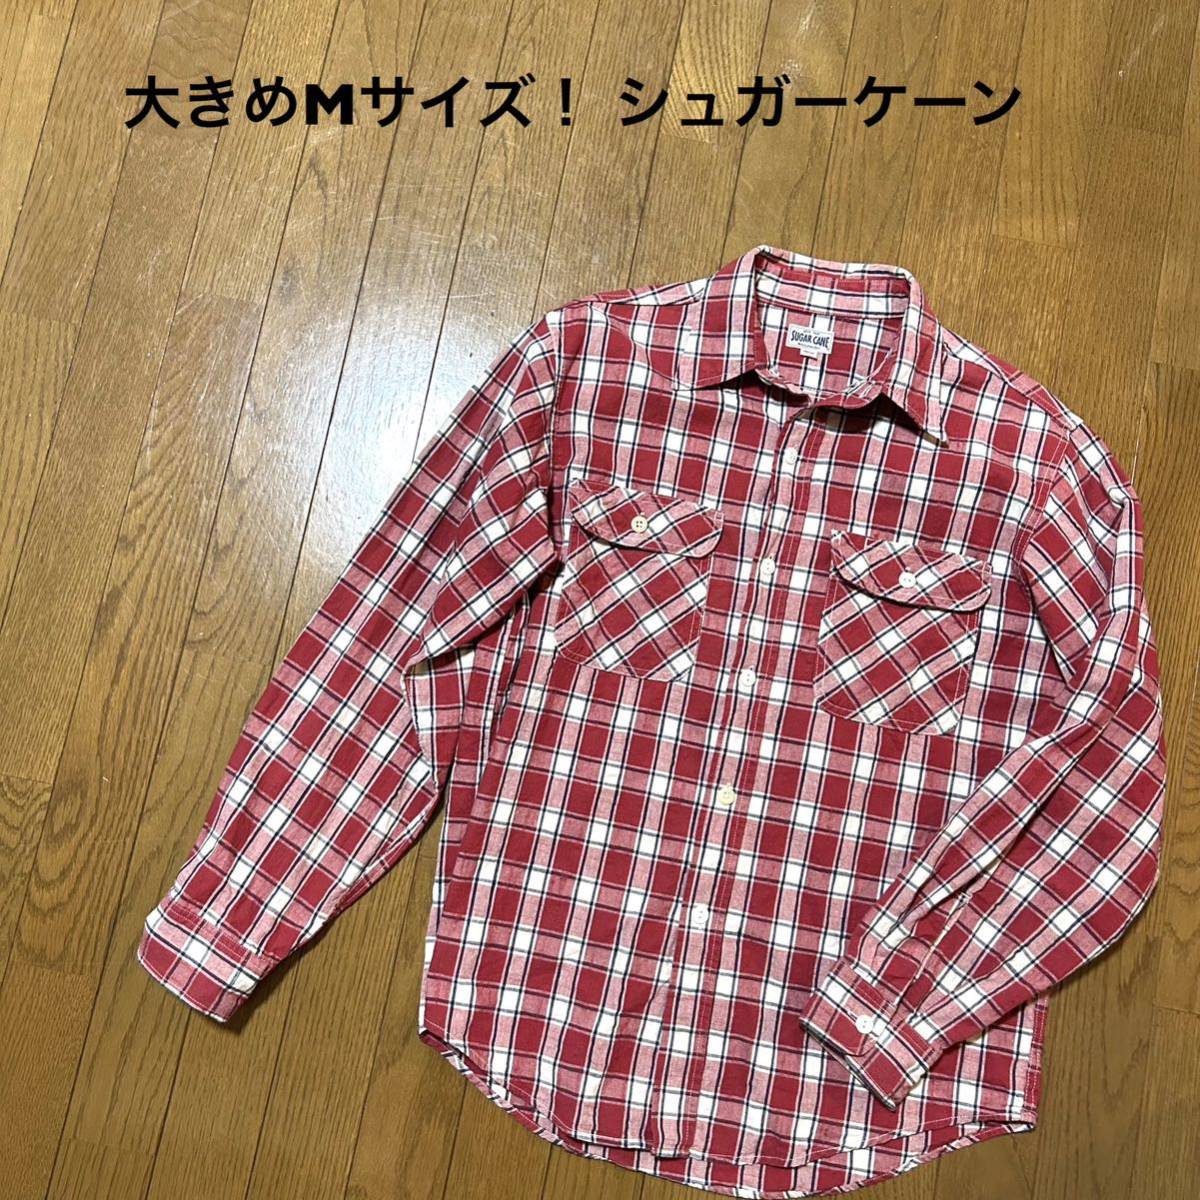 大きめMサイズ シュガーケーン古着長袖チェックシャツ 白×赤 ボタン